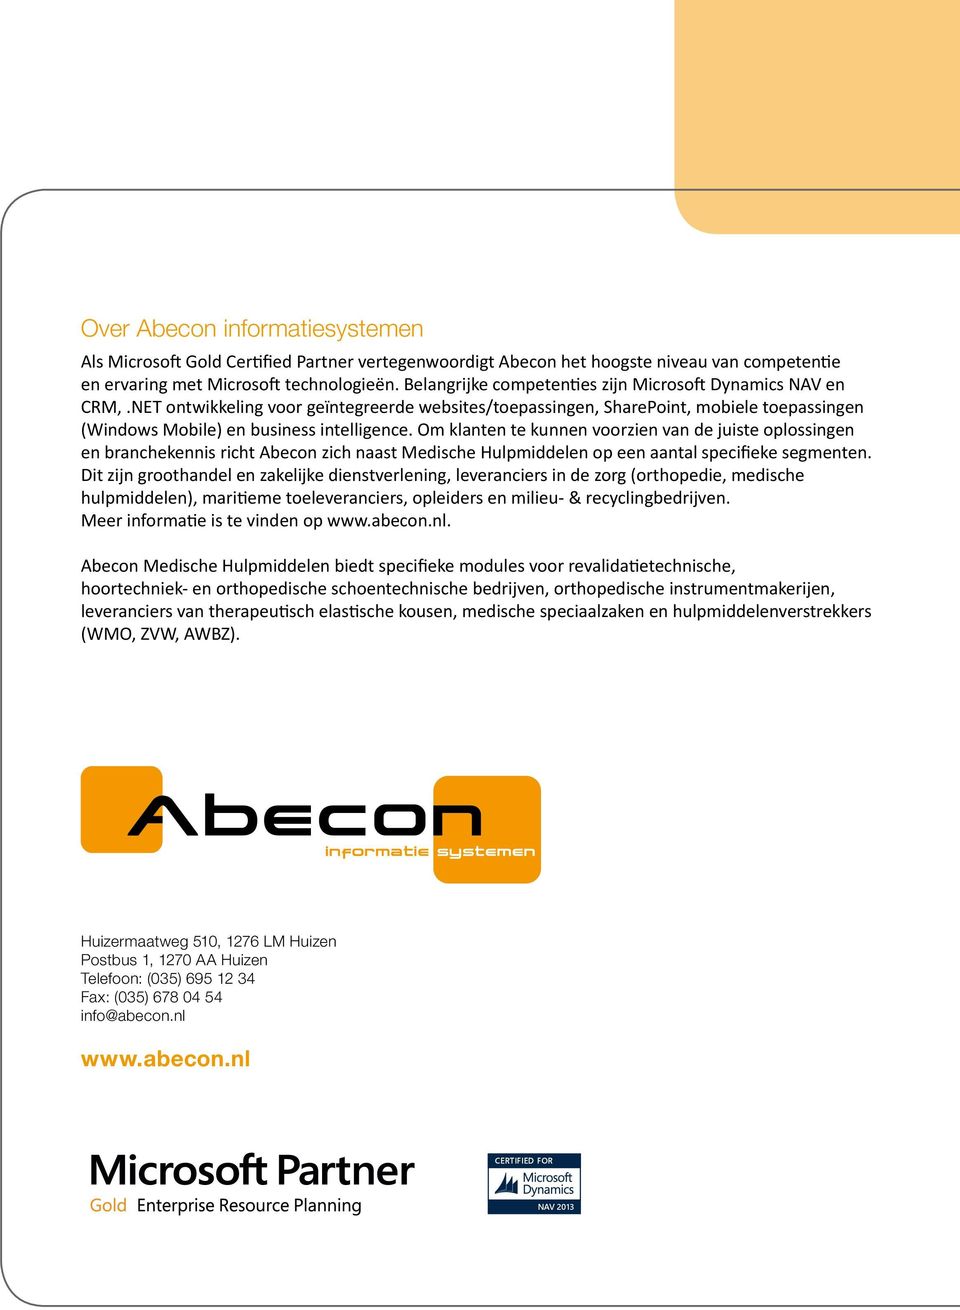 Om klanten te kunnen voorzien van de juiste oplossingen en branchekennis richt Abecon zich naast Medische Hulpmiddelen op een aantal specifieke segmenten.